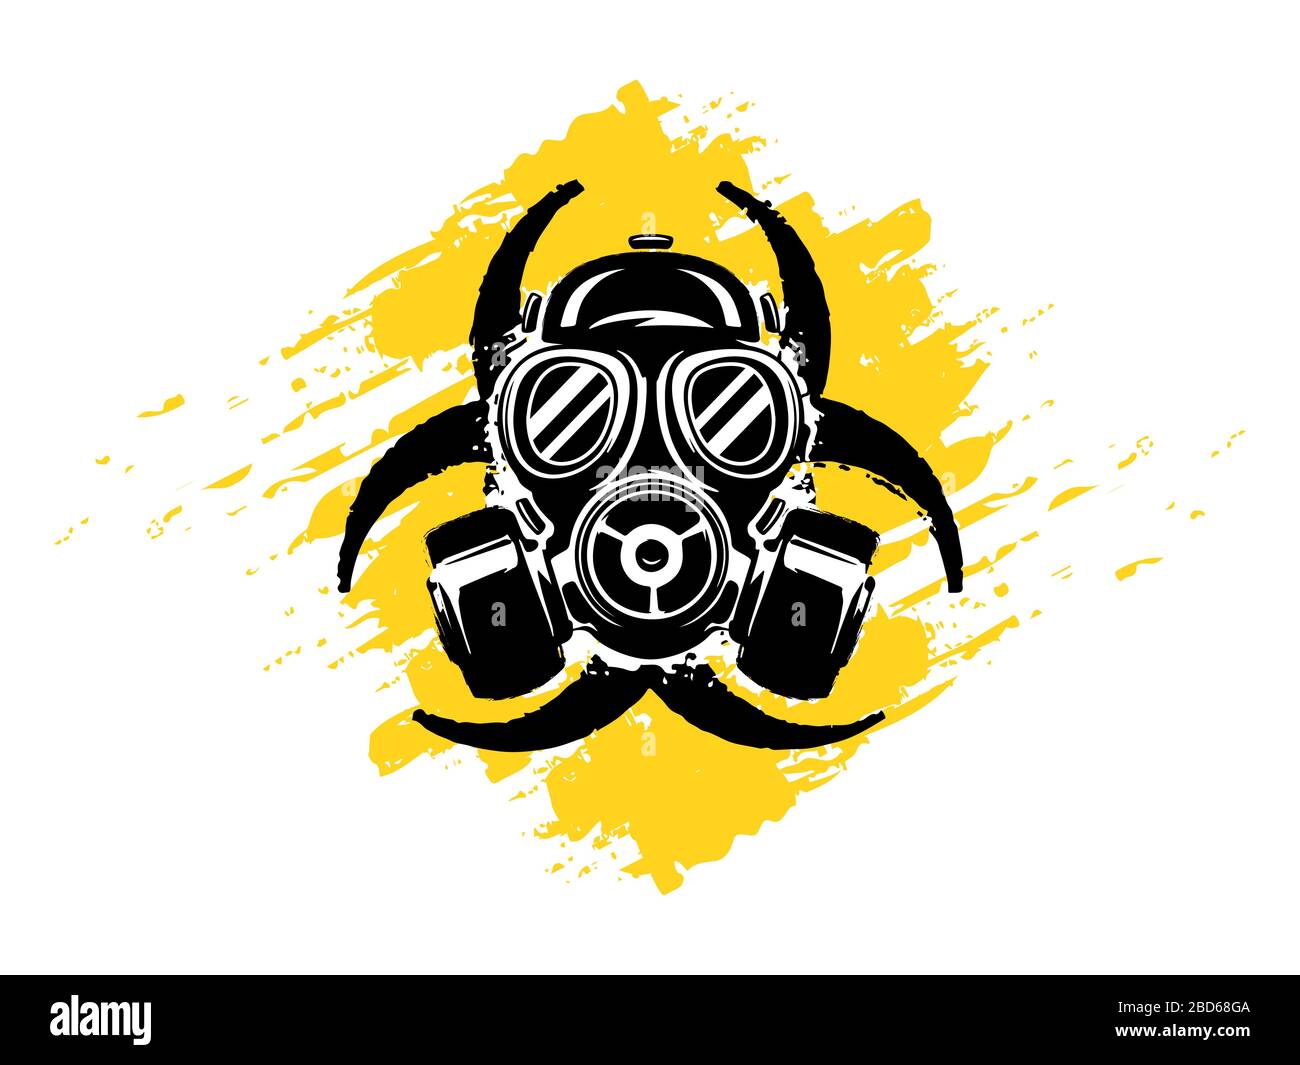 Anzeichen von Biohazard mit Gasspaske Grunge Vektor Illustration. Umweltverschmutzung und Gefahrenkonzept. Pandemie- oder Epidemiekonzept. Biohazard. Stock Vektor